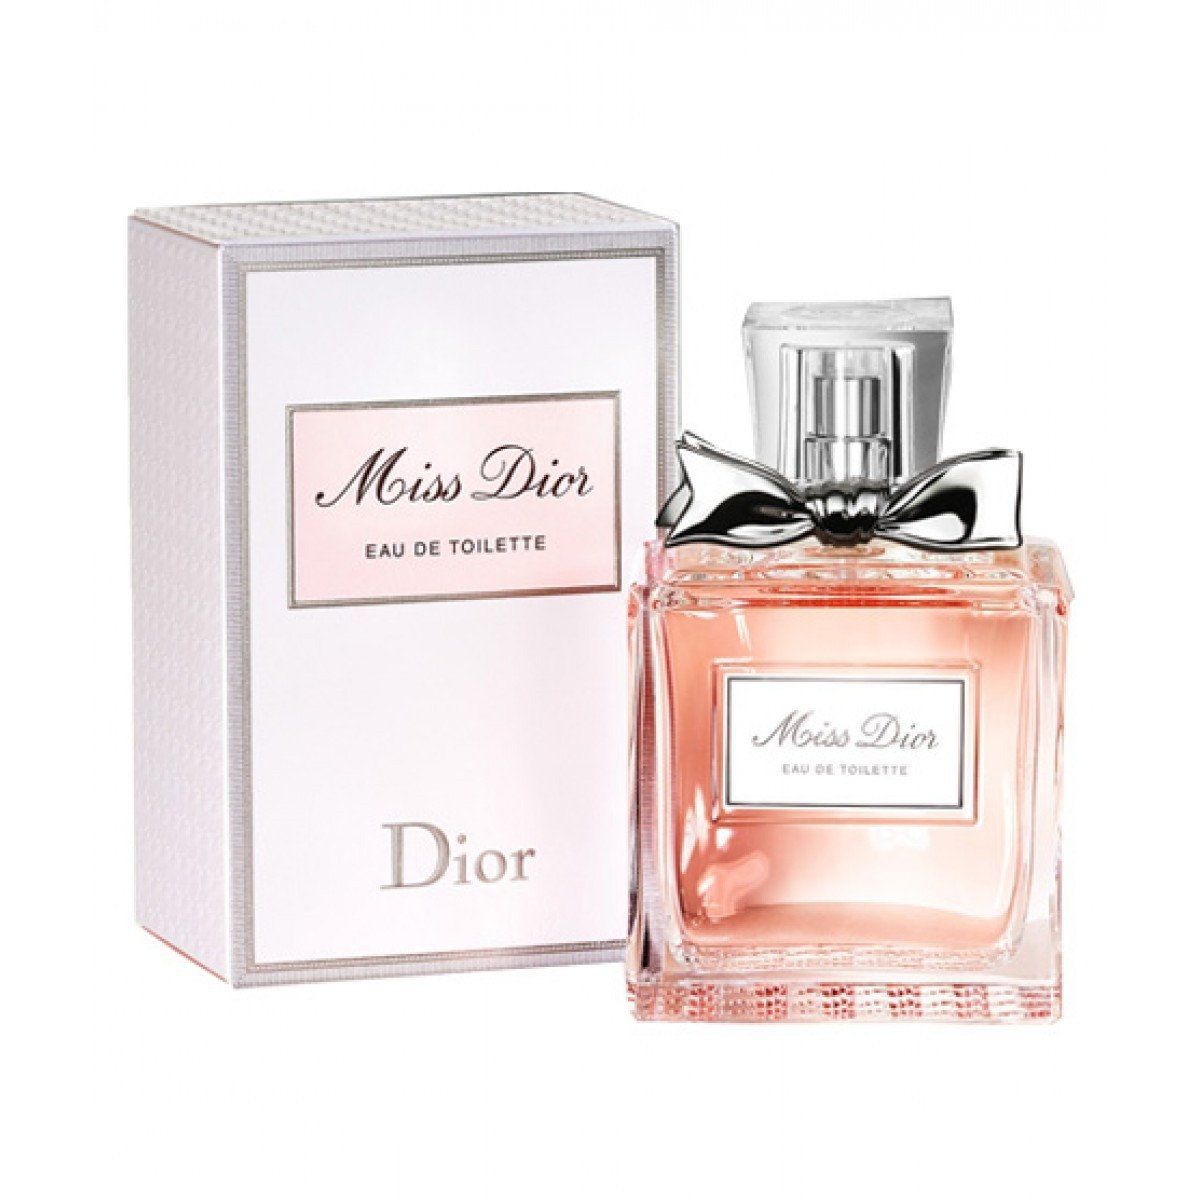 Miss Dior Cherie 3.4 Fl Oz/100ml Eau de Parfum 2011 Original